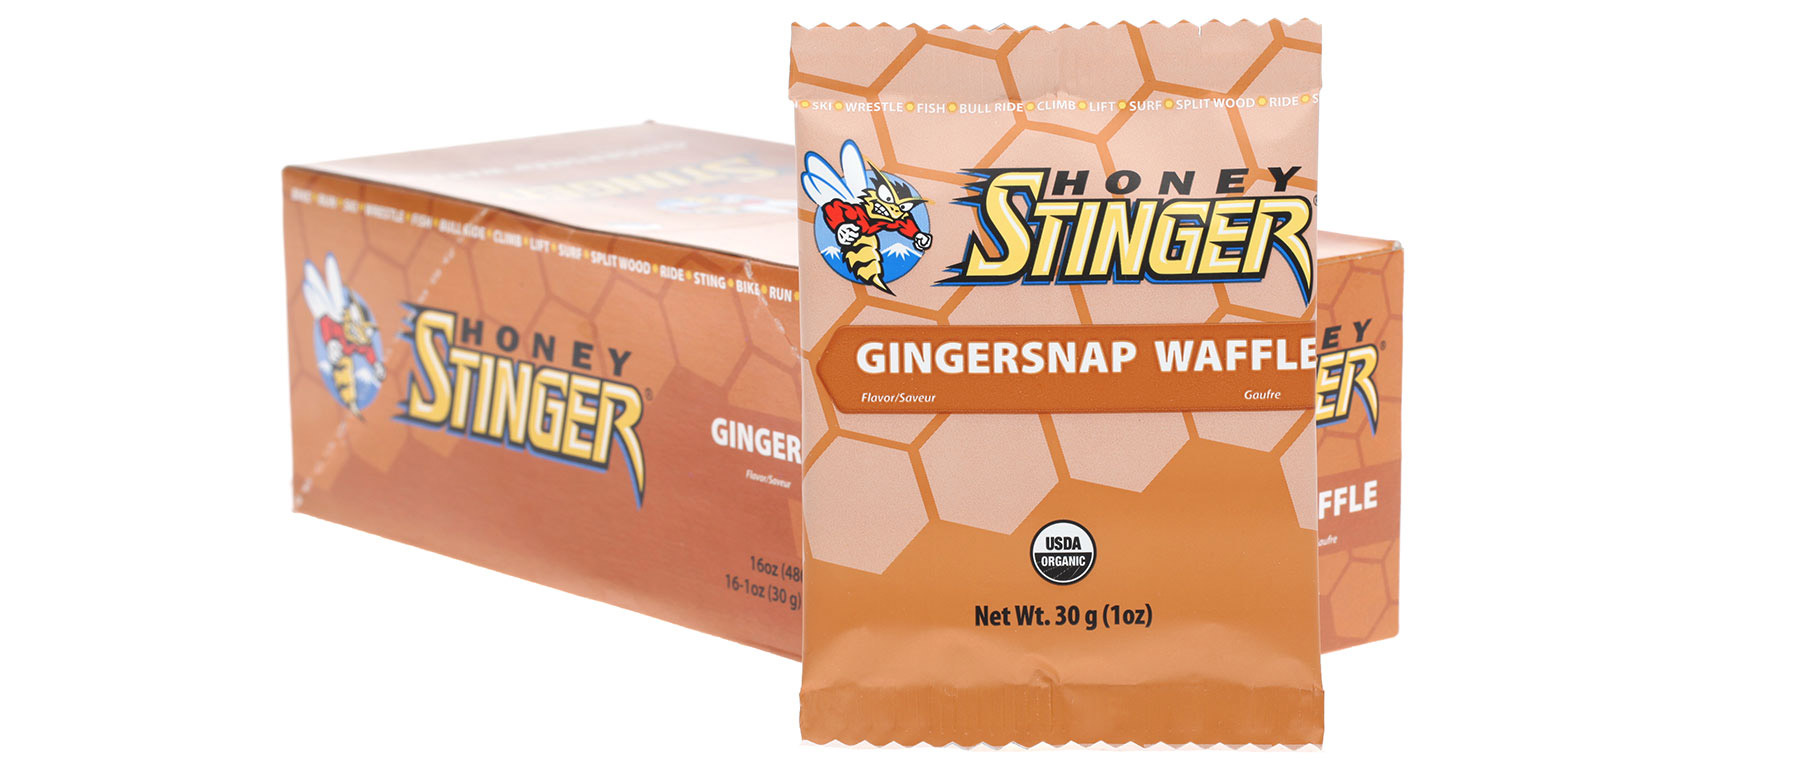 Honey Stinger Waffle Box of 16